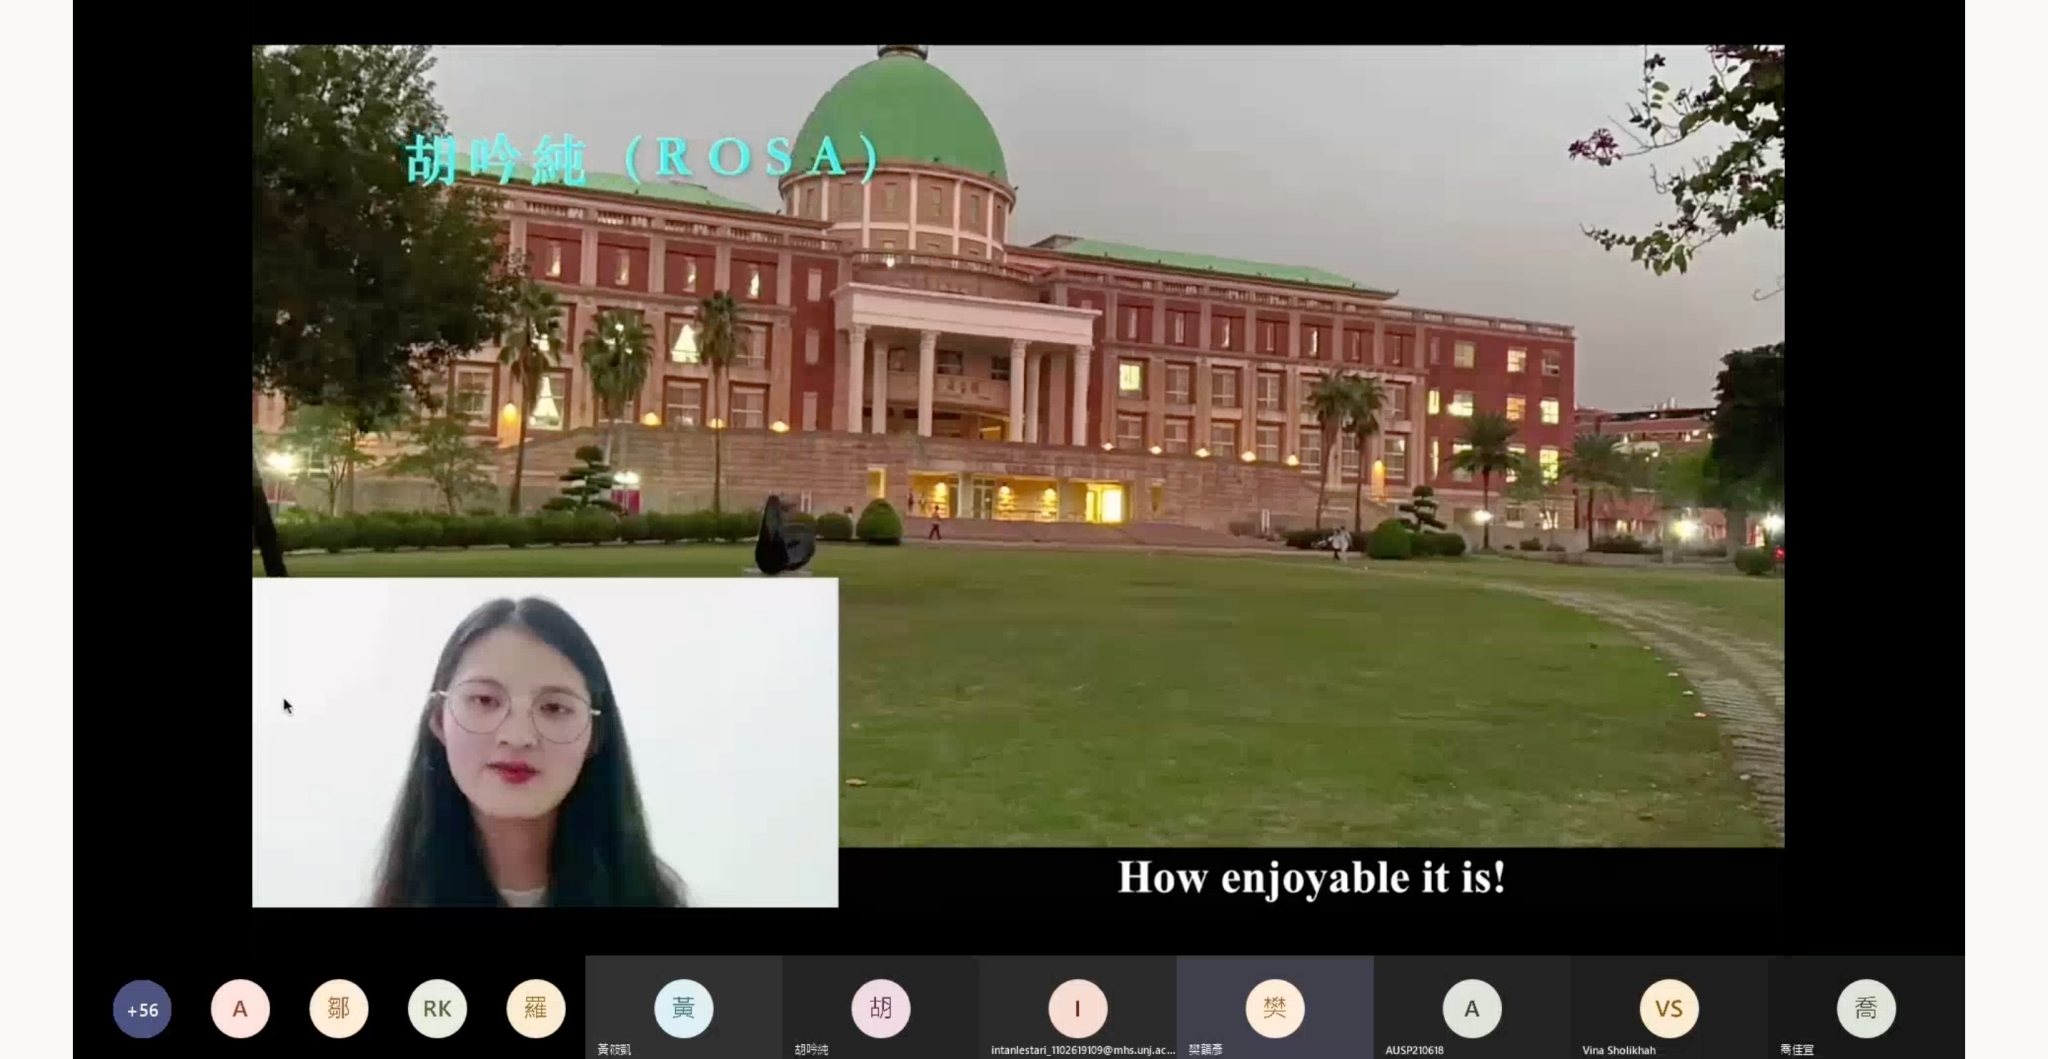 圖說：亞洲大學護理學系國際護理組學生胡吟純(Rosa)等學生拍攝影片，向國際生介紹亞洲大學校園美景。